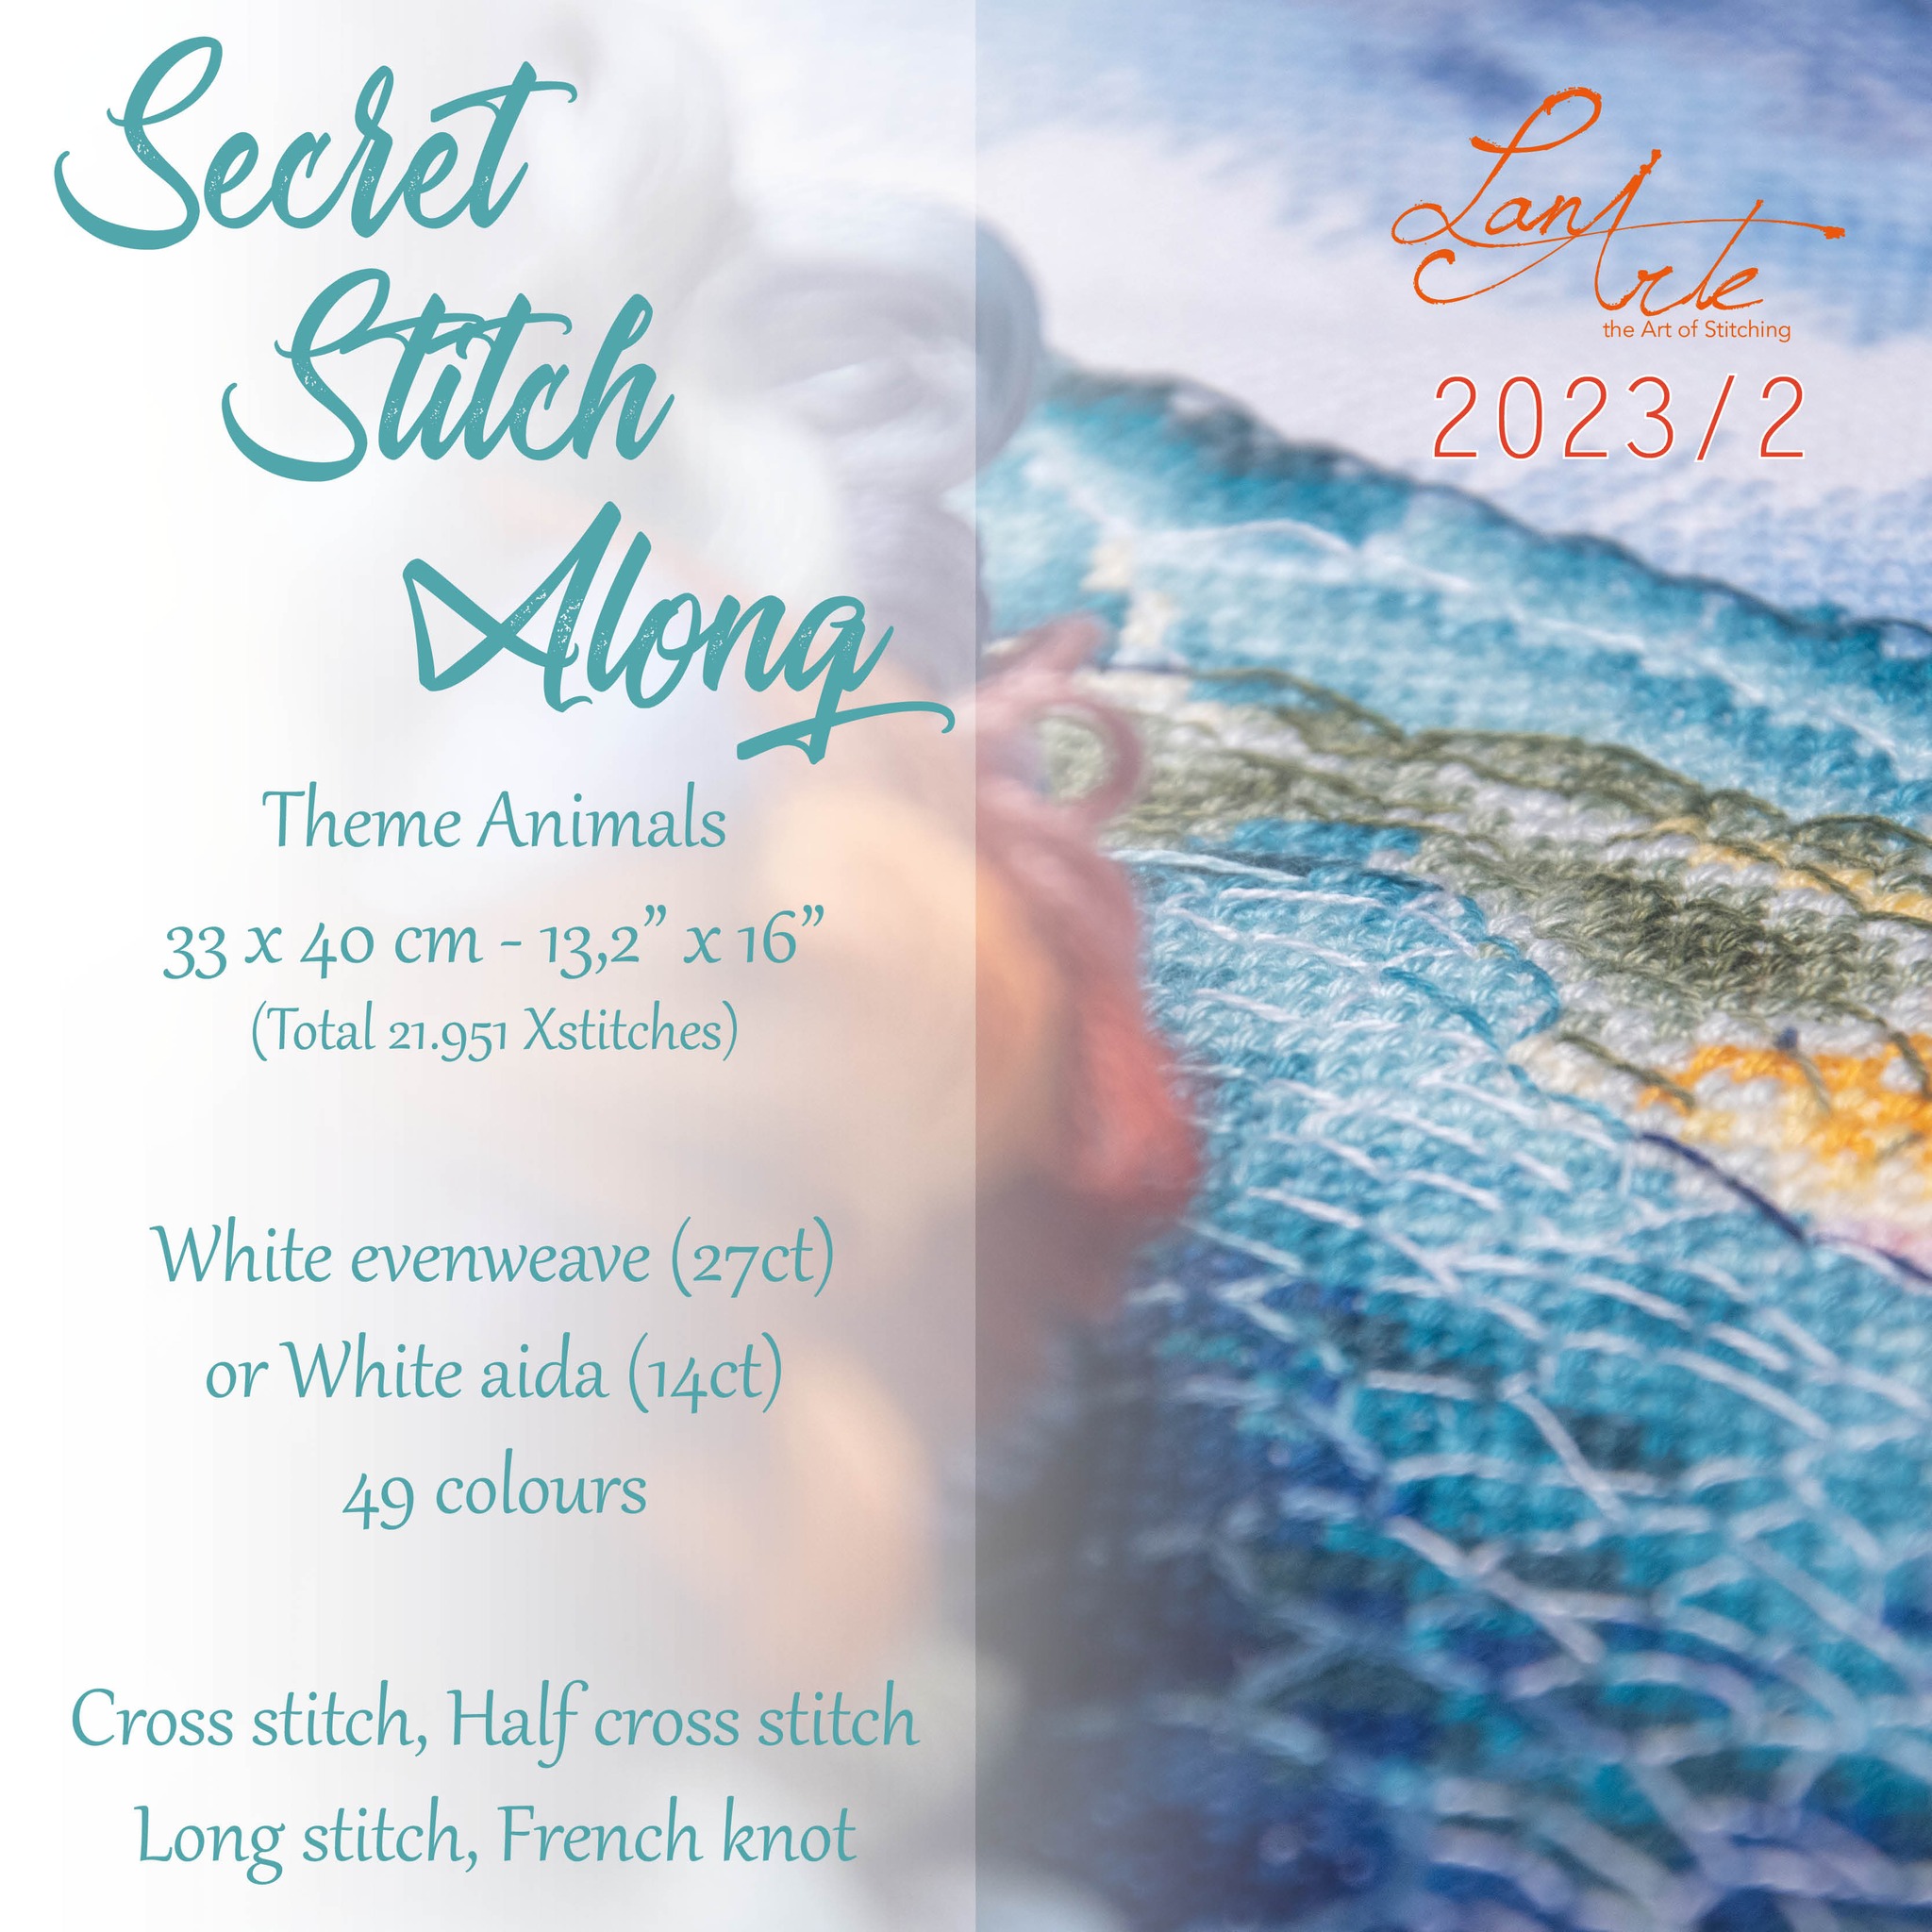 Secret Stitch Along 2023